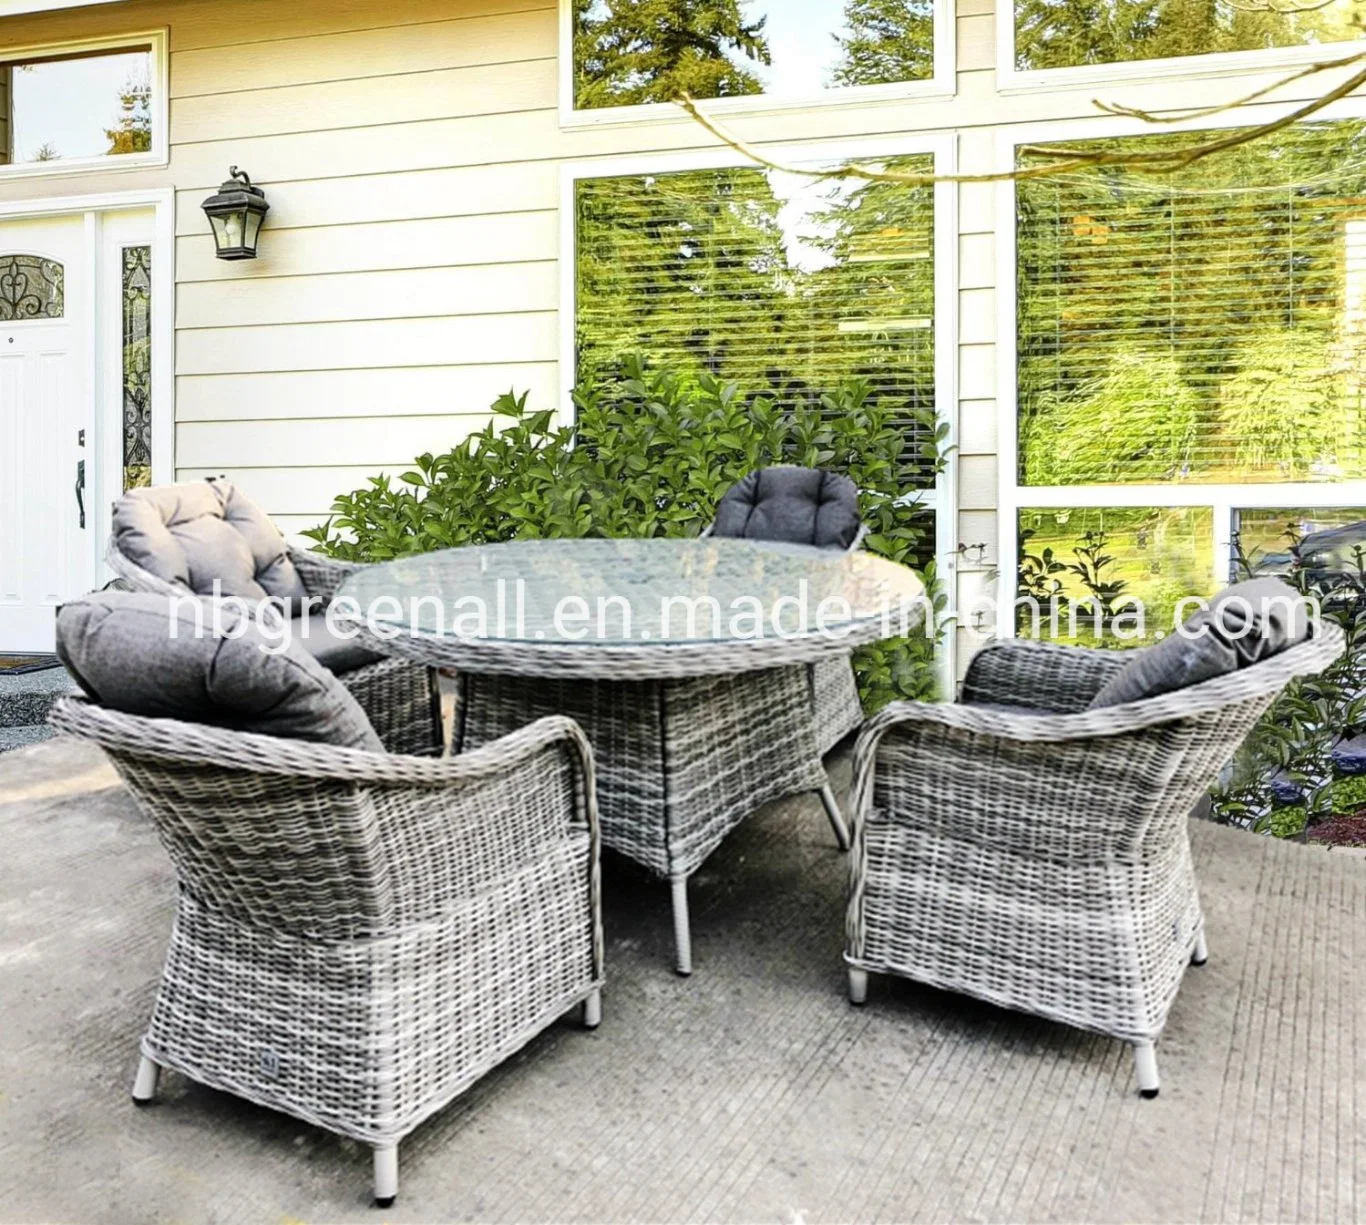 La Ronda exterior moderno restaurante de mimbre Ratttan mesa de comedor y sillas Aluminio jardín Muebles para Hotel